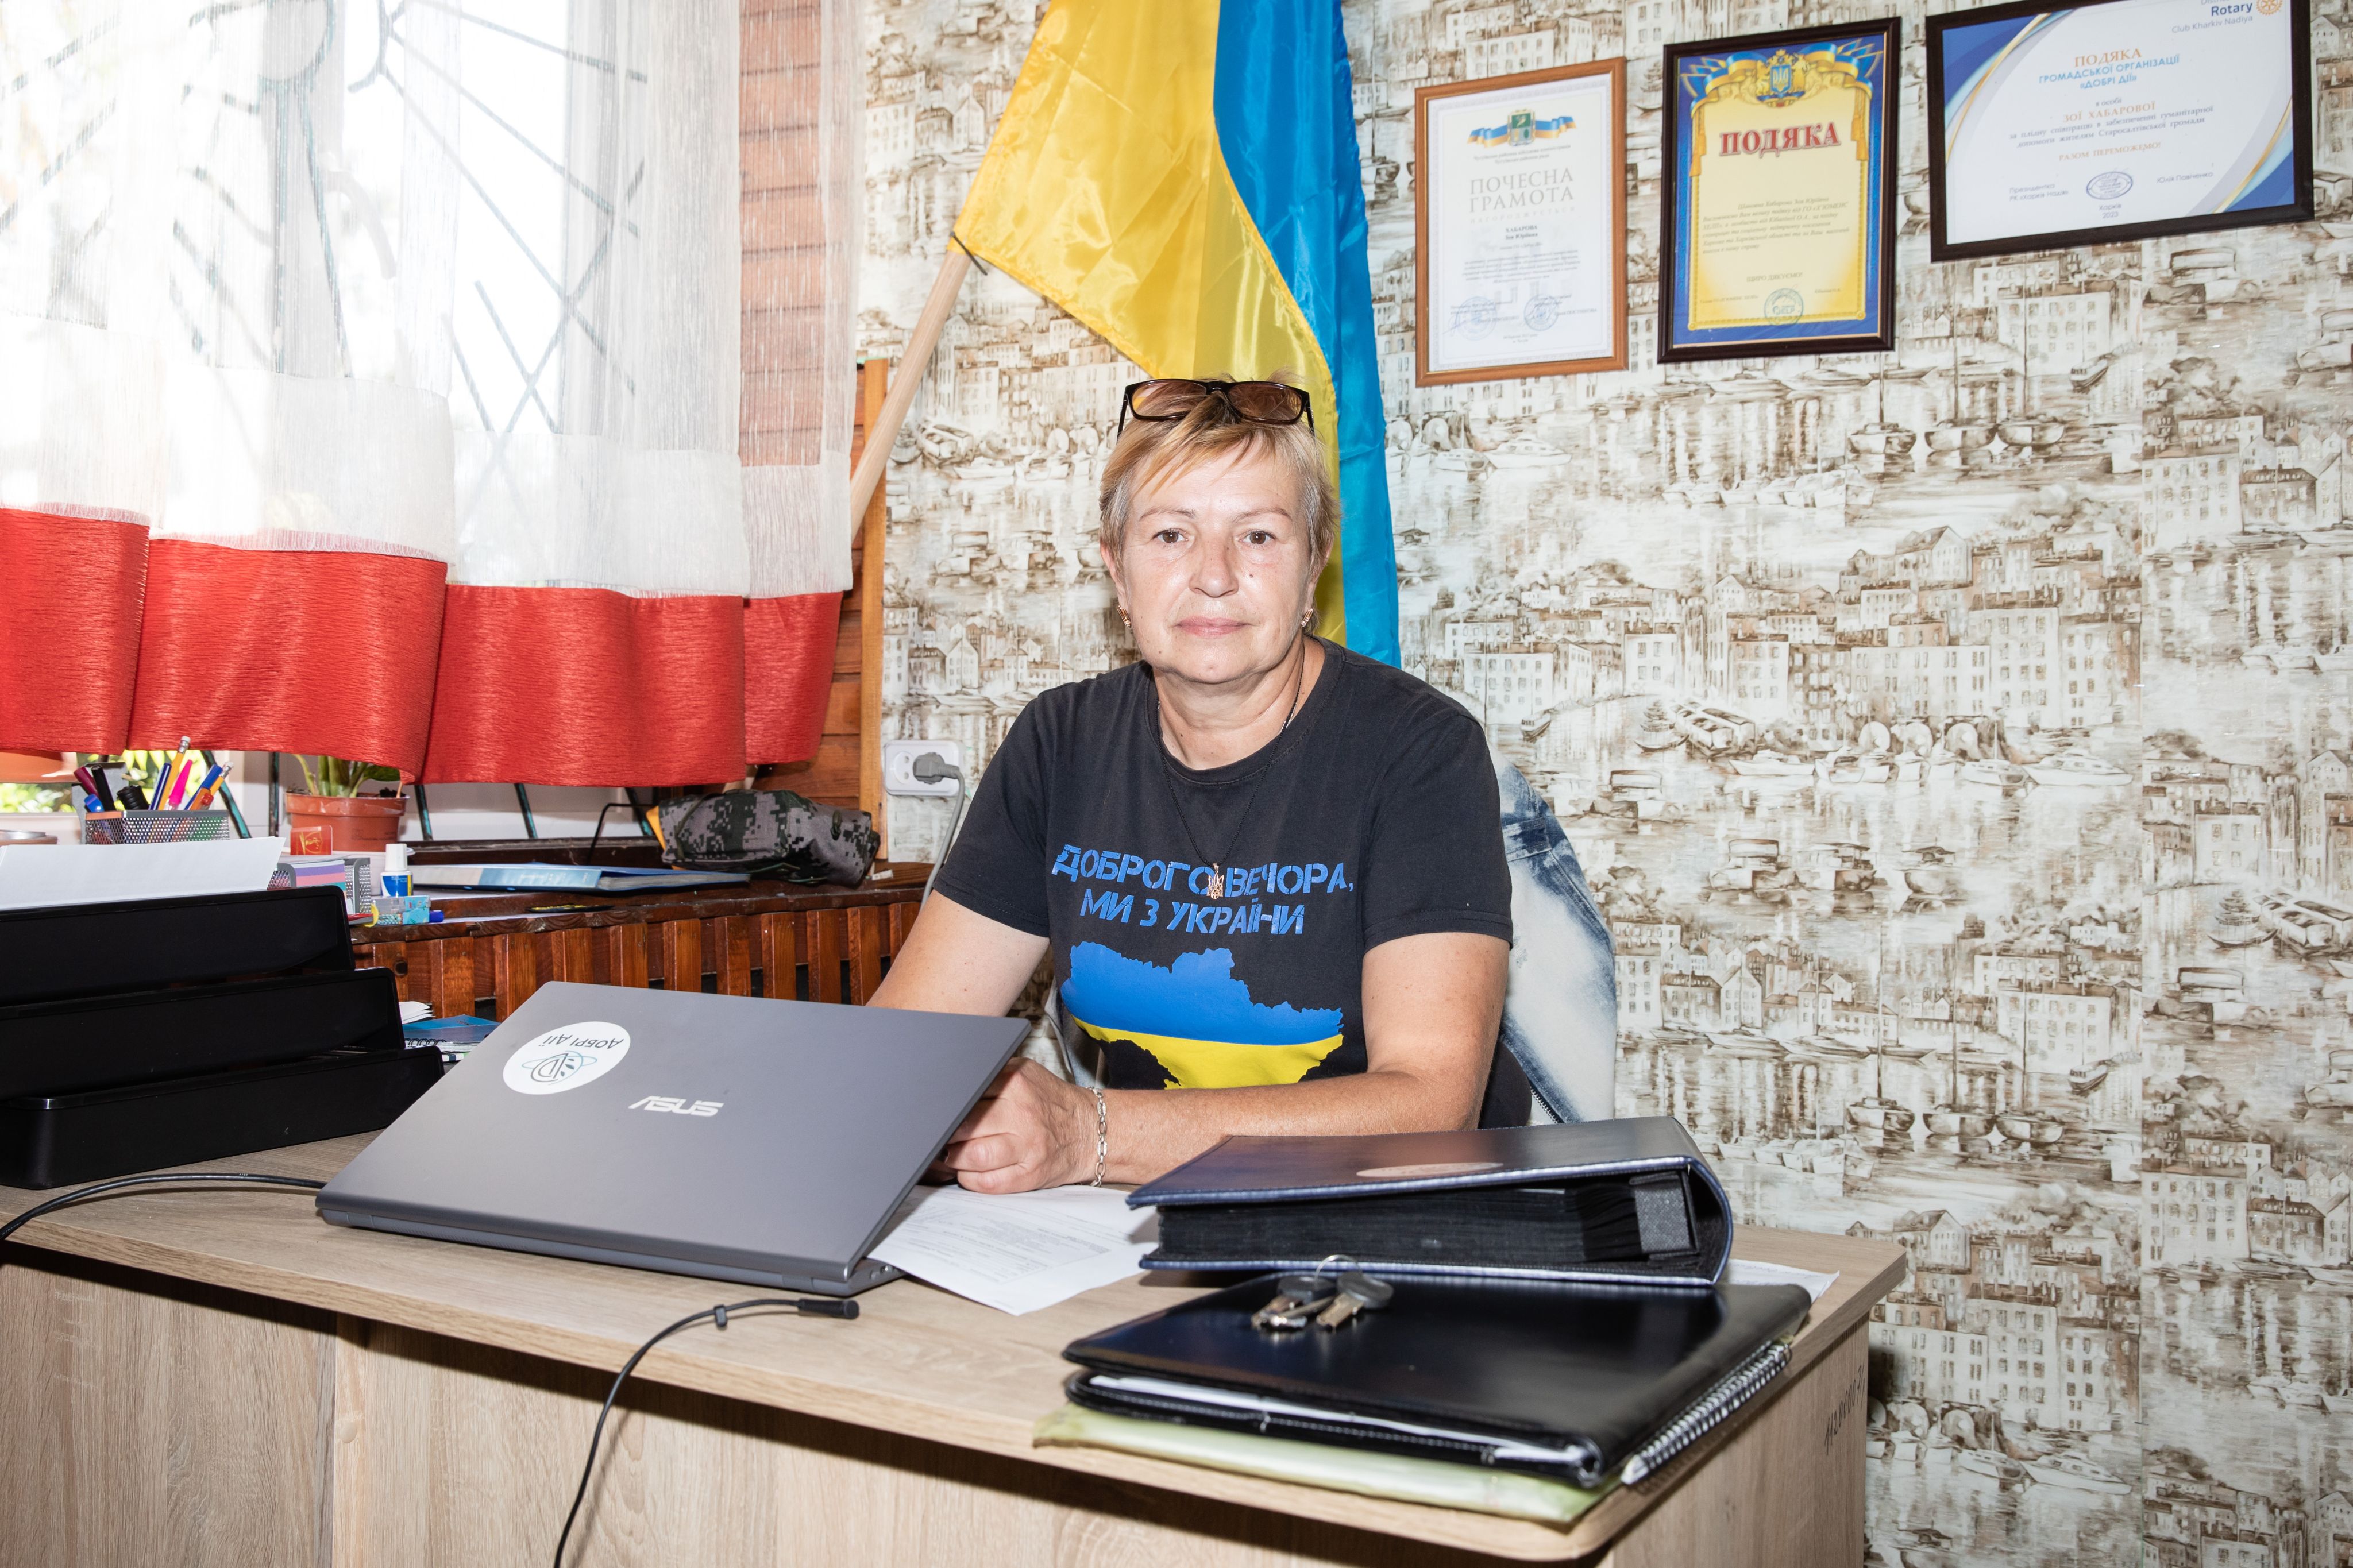 Im Bild ist Zoia Khabarova zu sehen, die am Schreibtisch ihres Büros sitzt. Sie trägt ein Shirt, auf dem die Länderumrisse der Ukraine in den Flaggenfarben abgebildet sind.